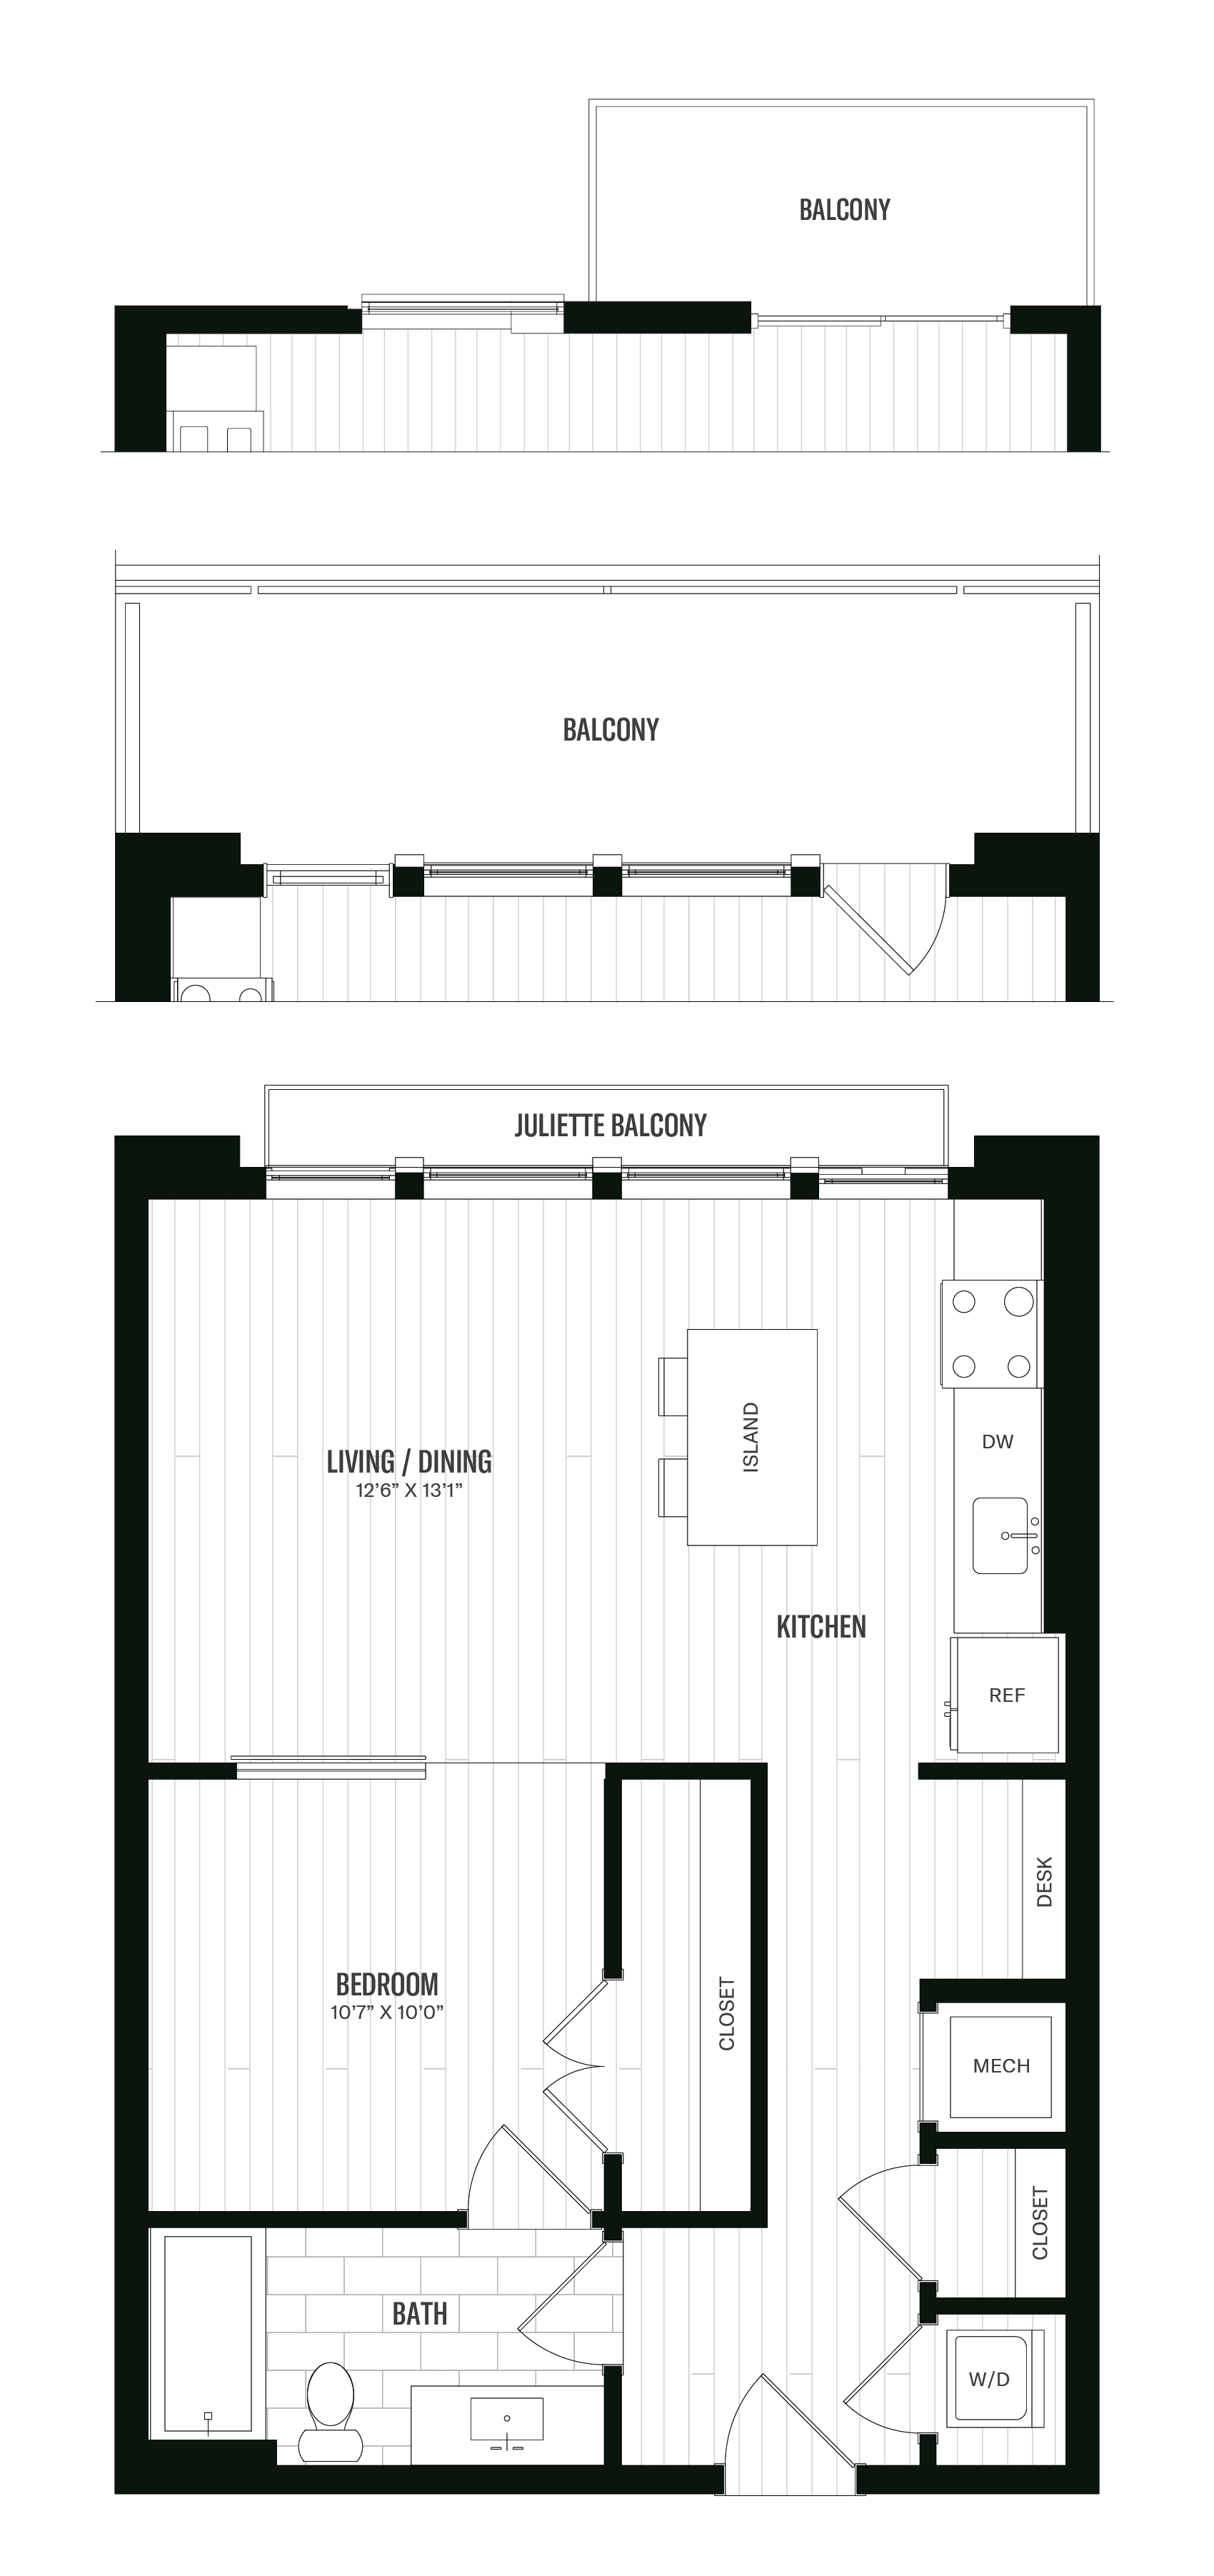 Floorplan image of unit 212